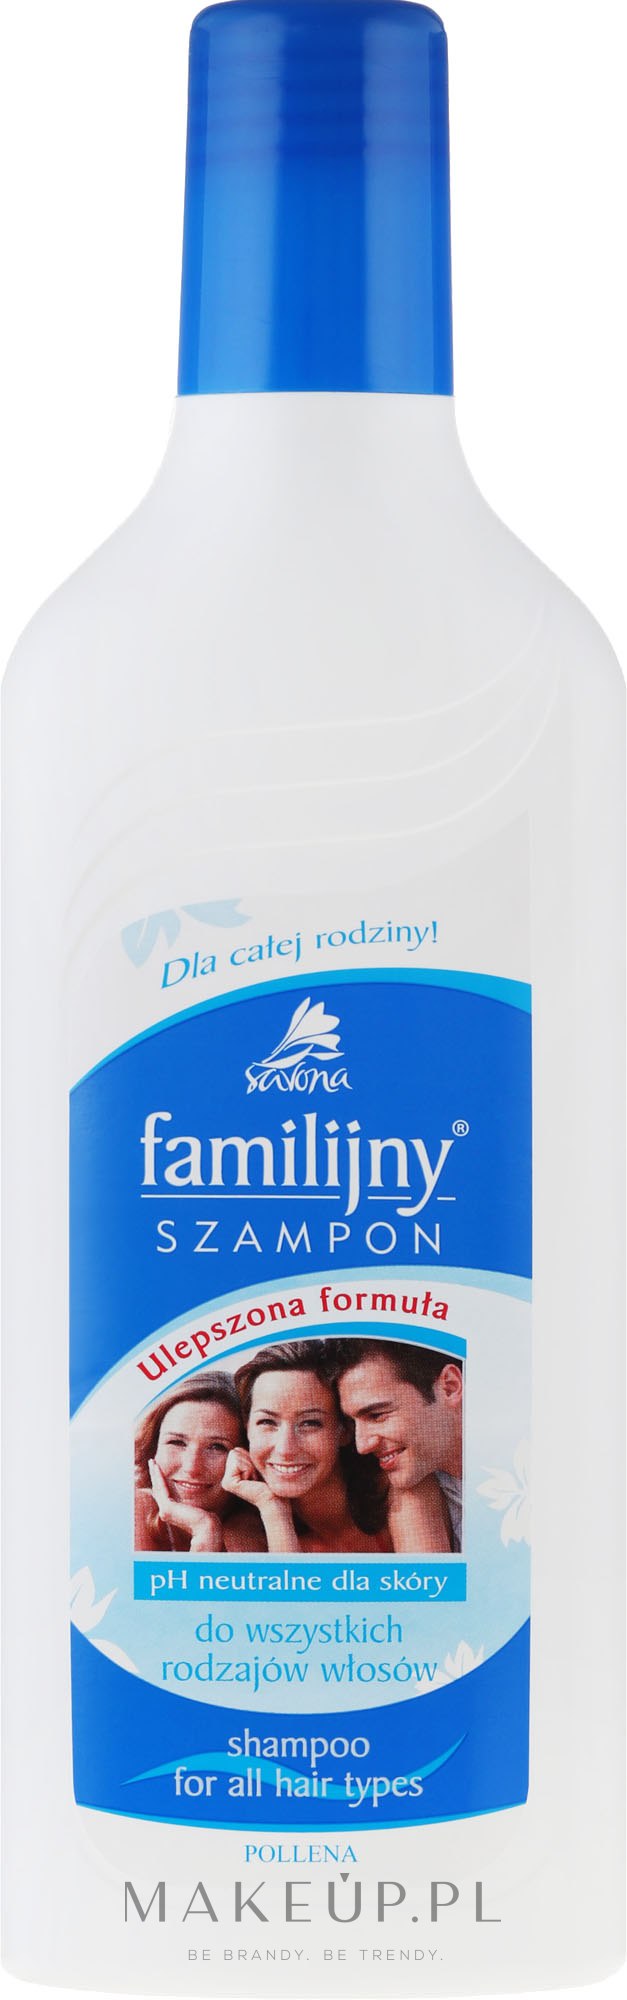 pollena-savona familijny szampon pokrzywowy z witaminami